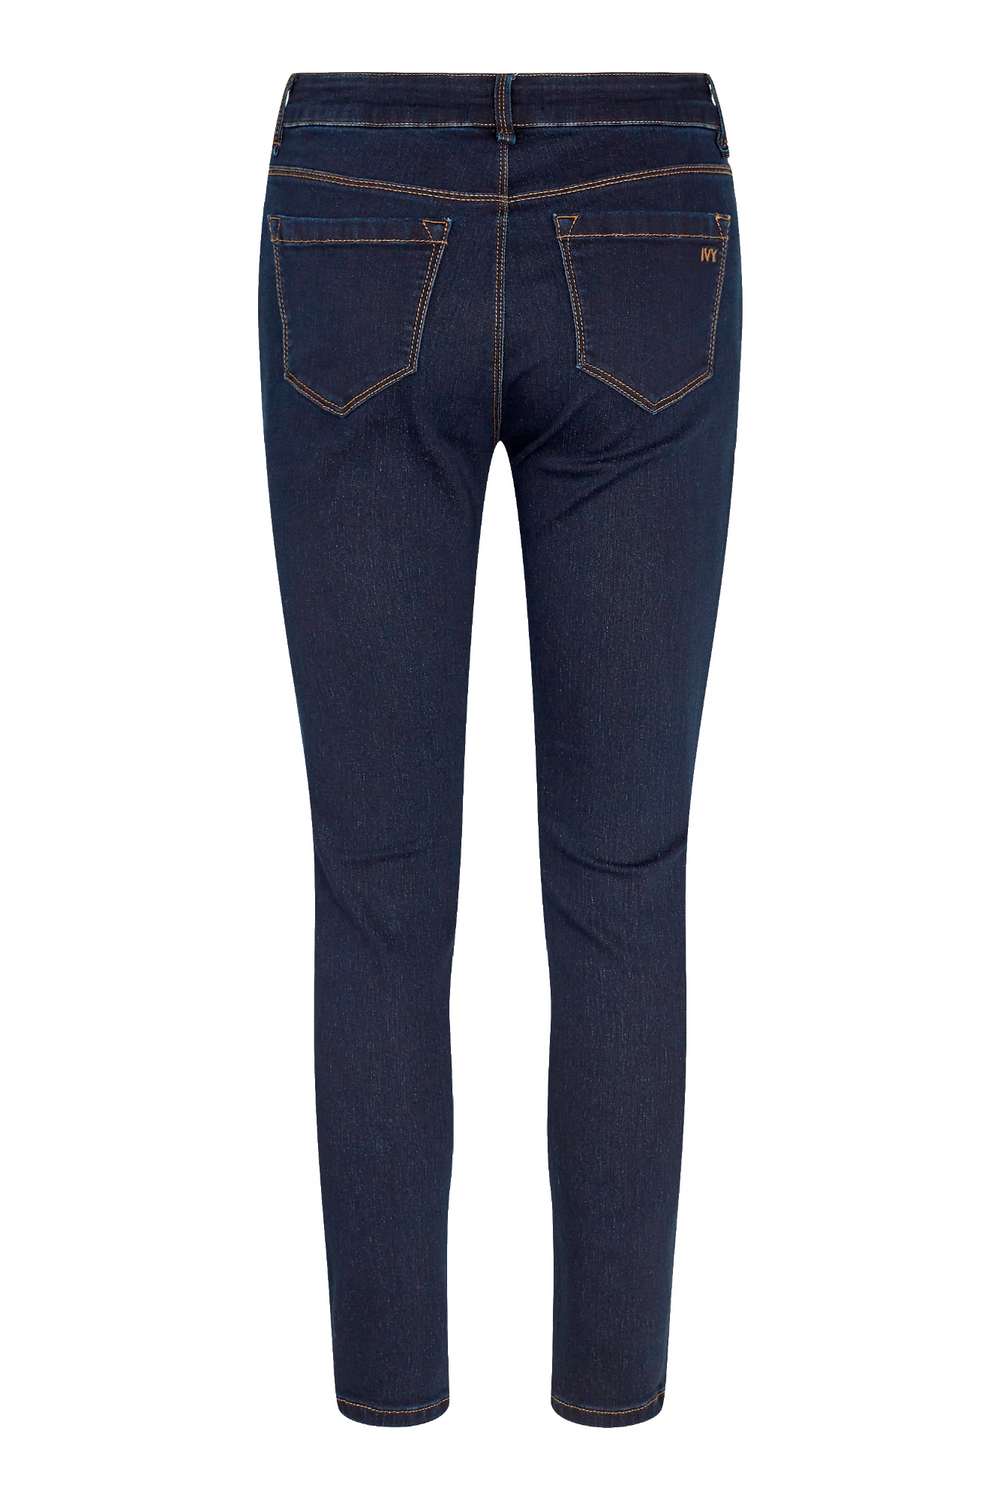 Jeans | IVY Copenhagen Alexa Jeans Wash Dark Indigo, denim blue